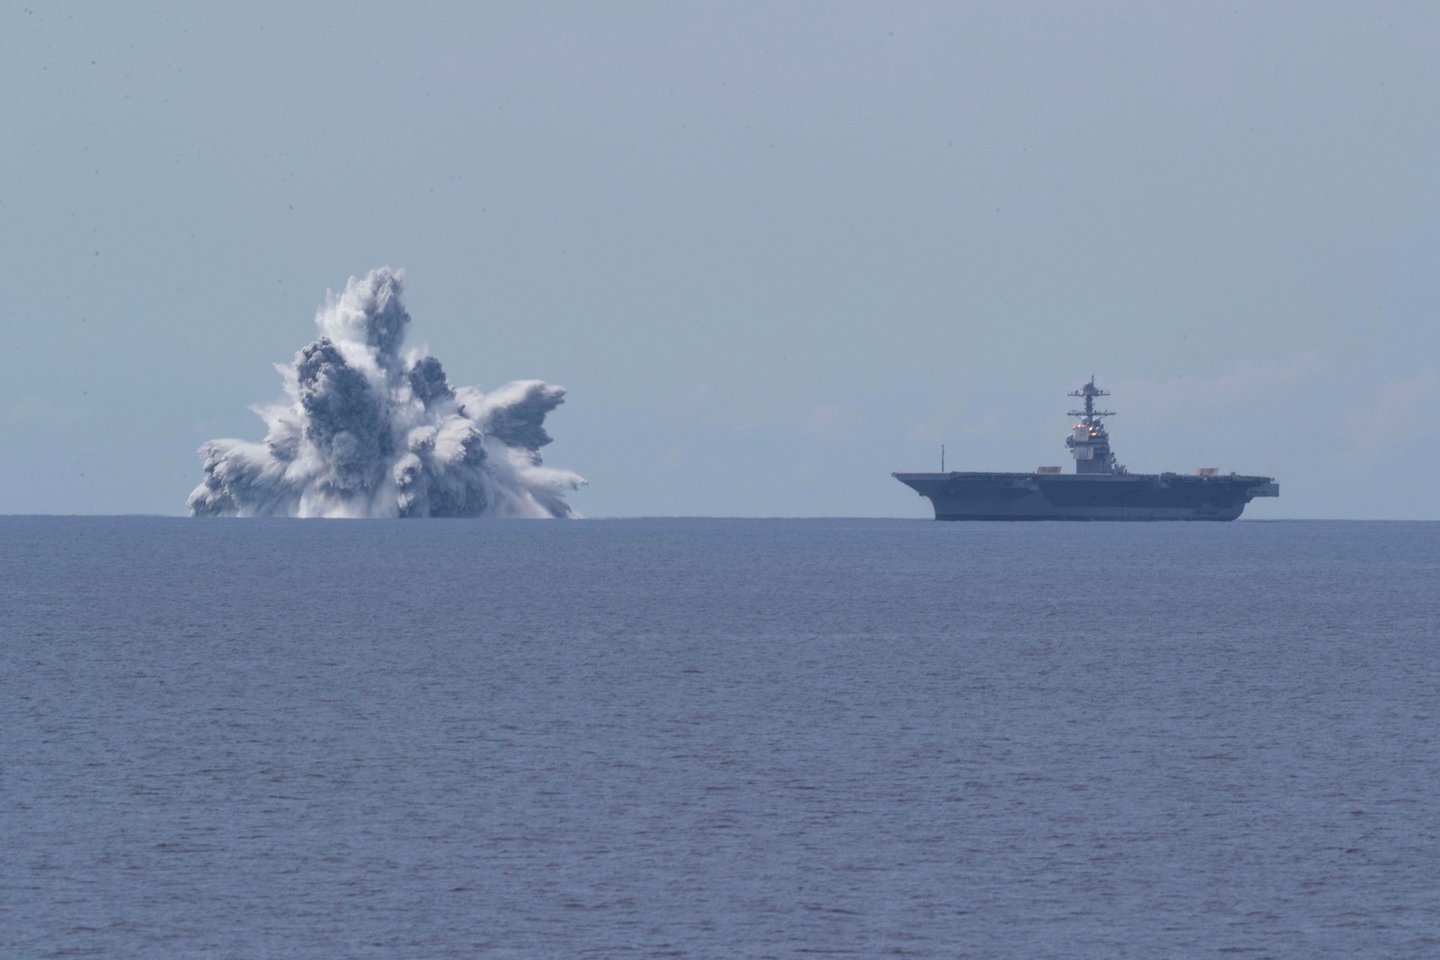  Pirmasis bandymas, žinomas kaip „Viso laivo smūginis bandymas“ (angl. Full Ship Shock Trials), buvo atliktas penktadienį, kai karinis jūrų laivynas surengė milžinišką sprogdinimą netoli lėktuvnešio „USS Gerald R. Ford“.<br> AFP / Scanpix nuotr.